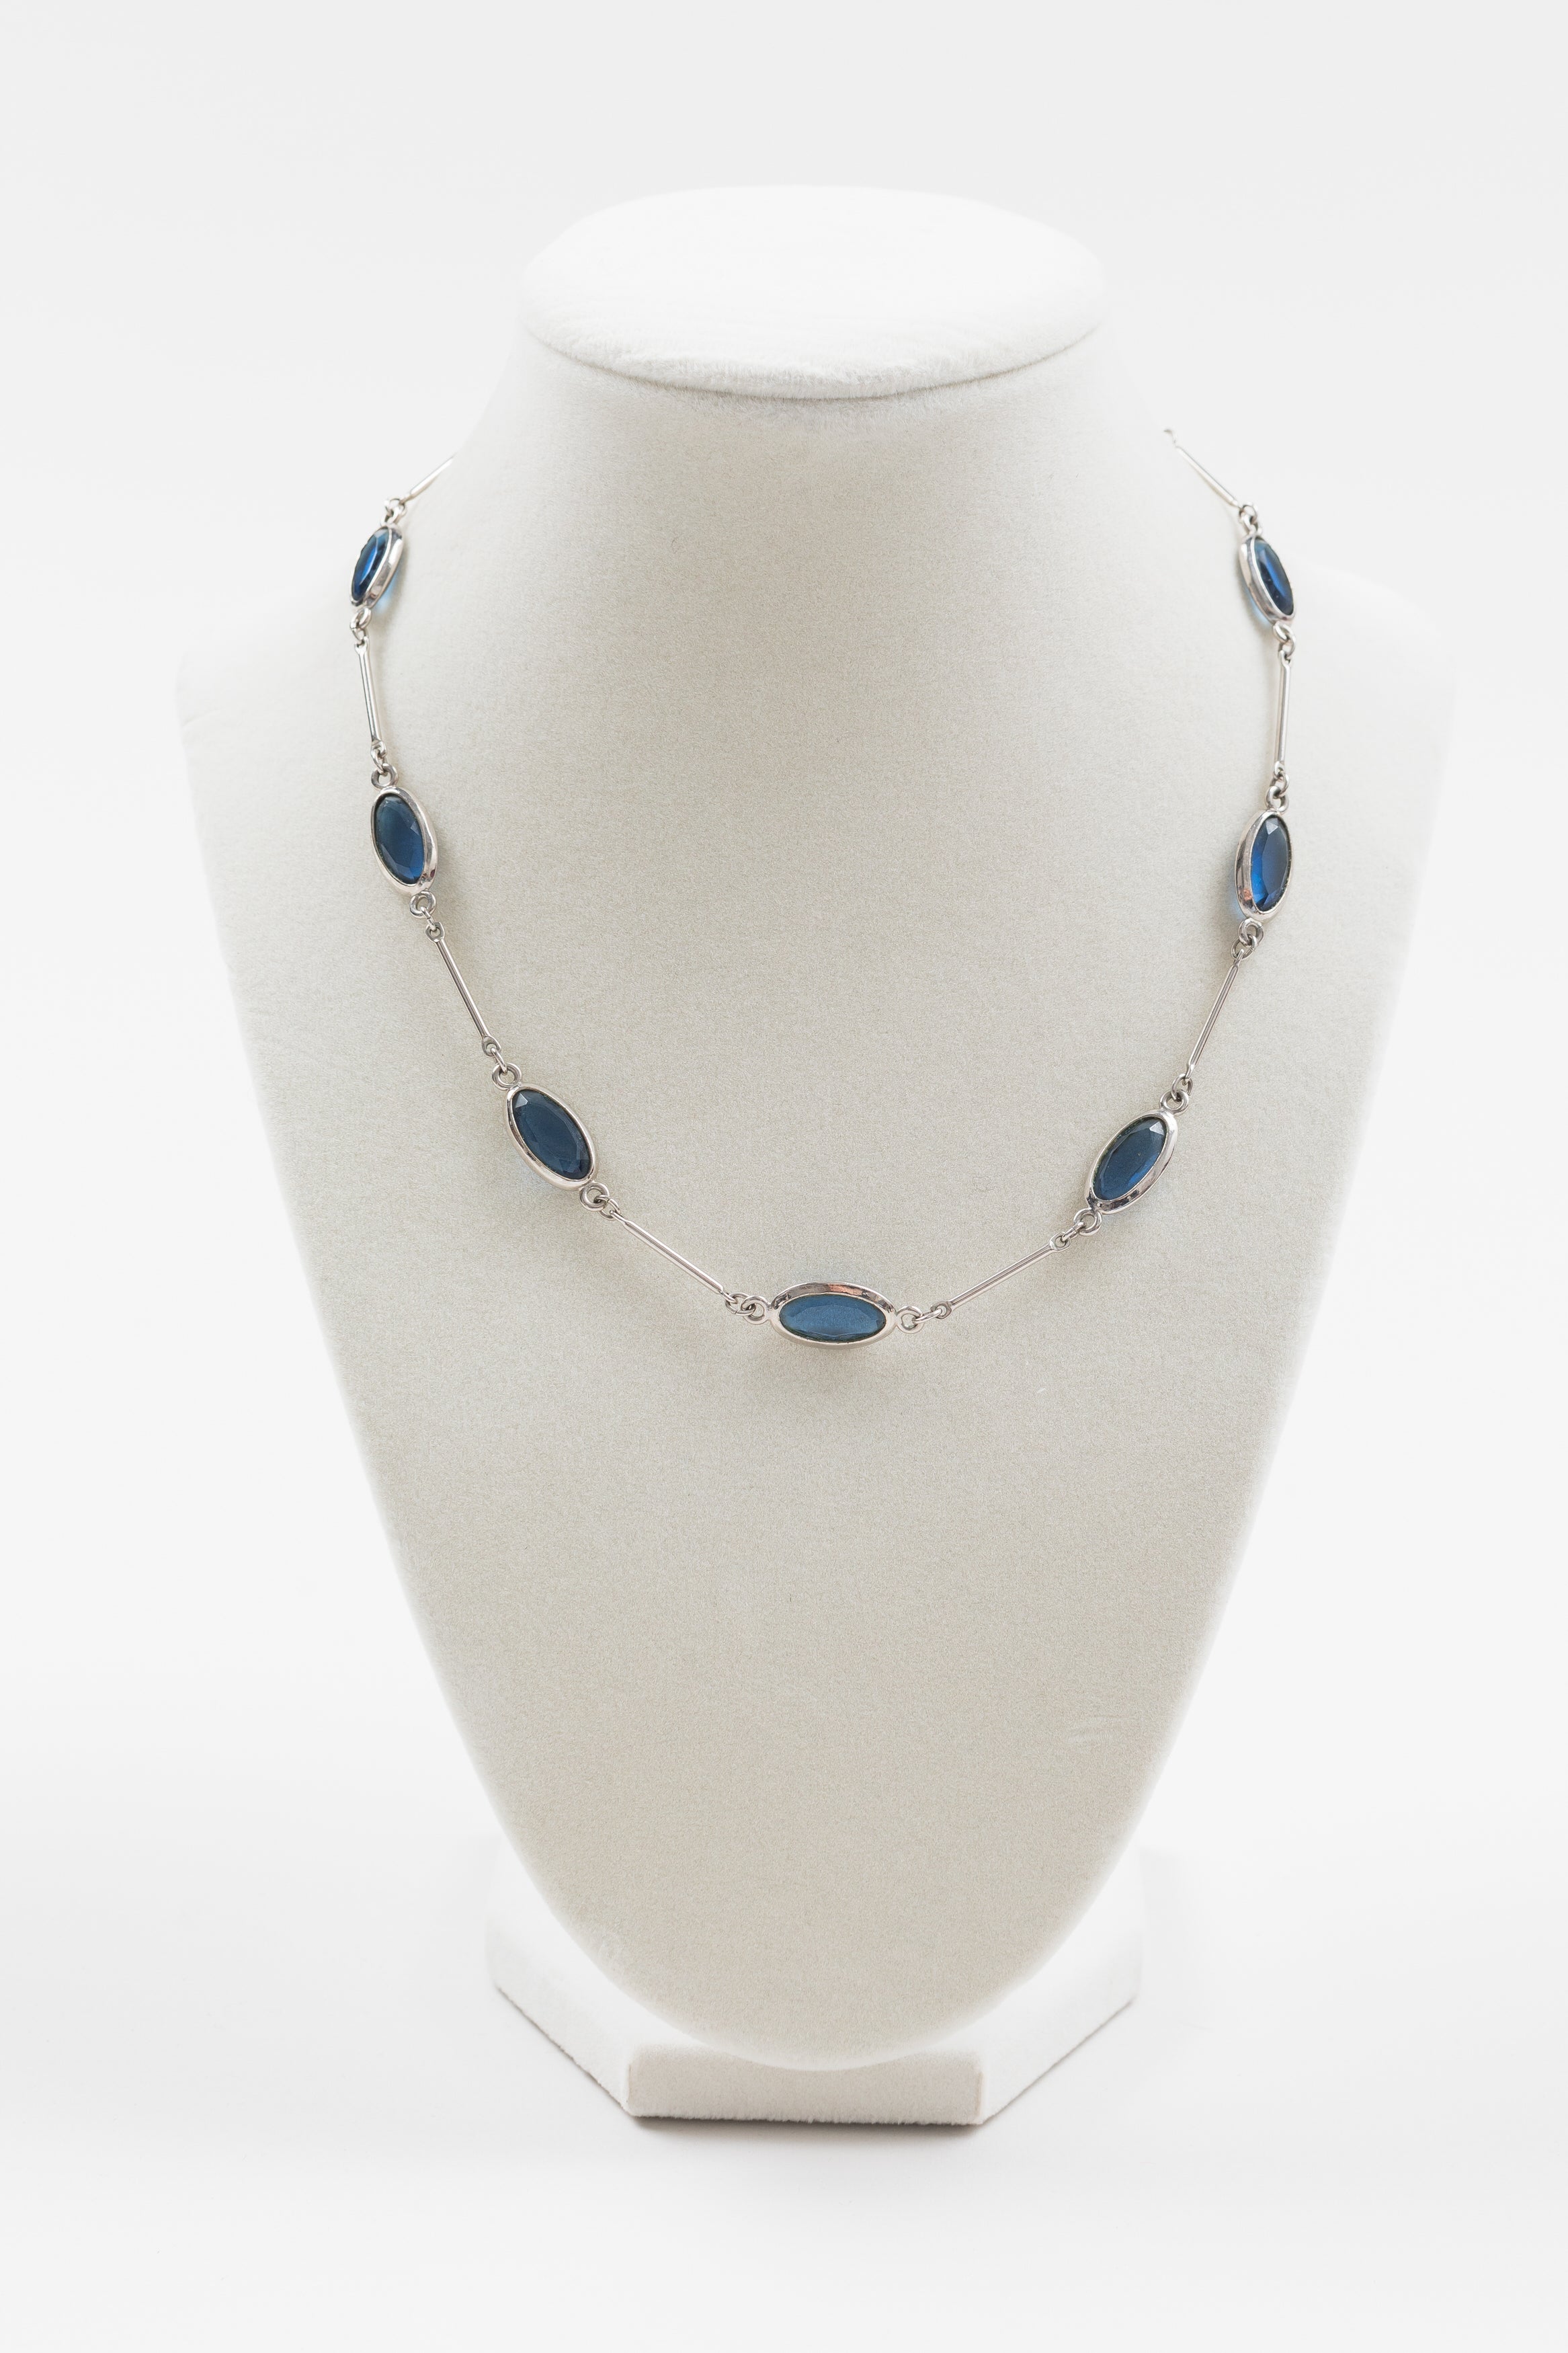 Agatha (Paris) blue stone necklace